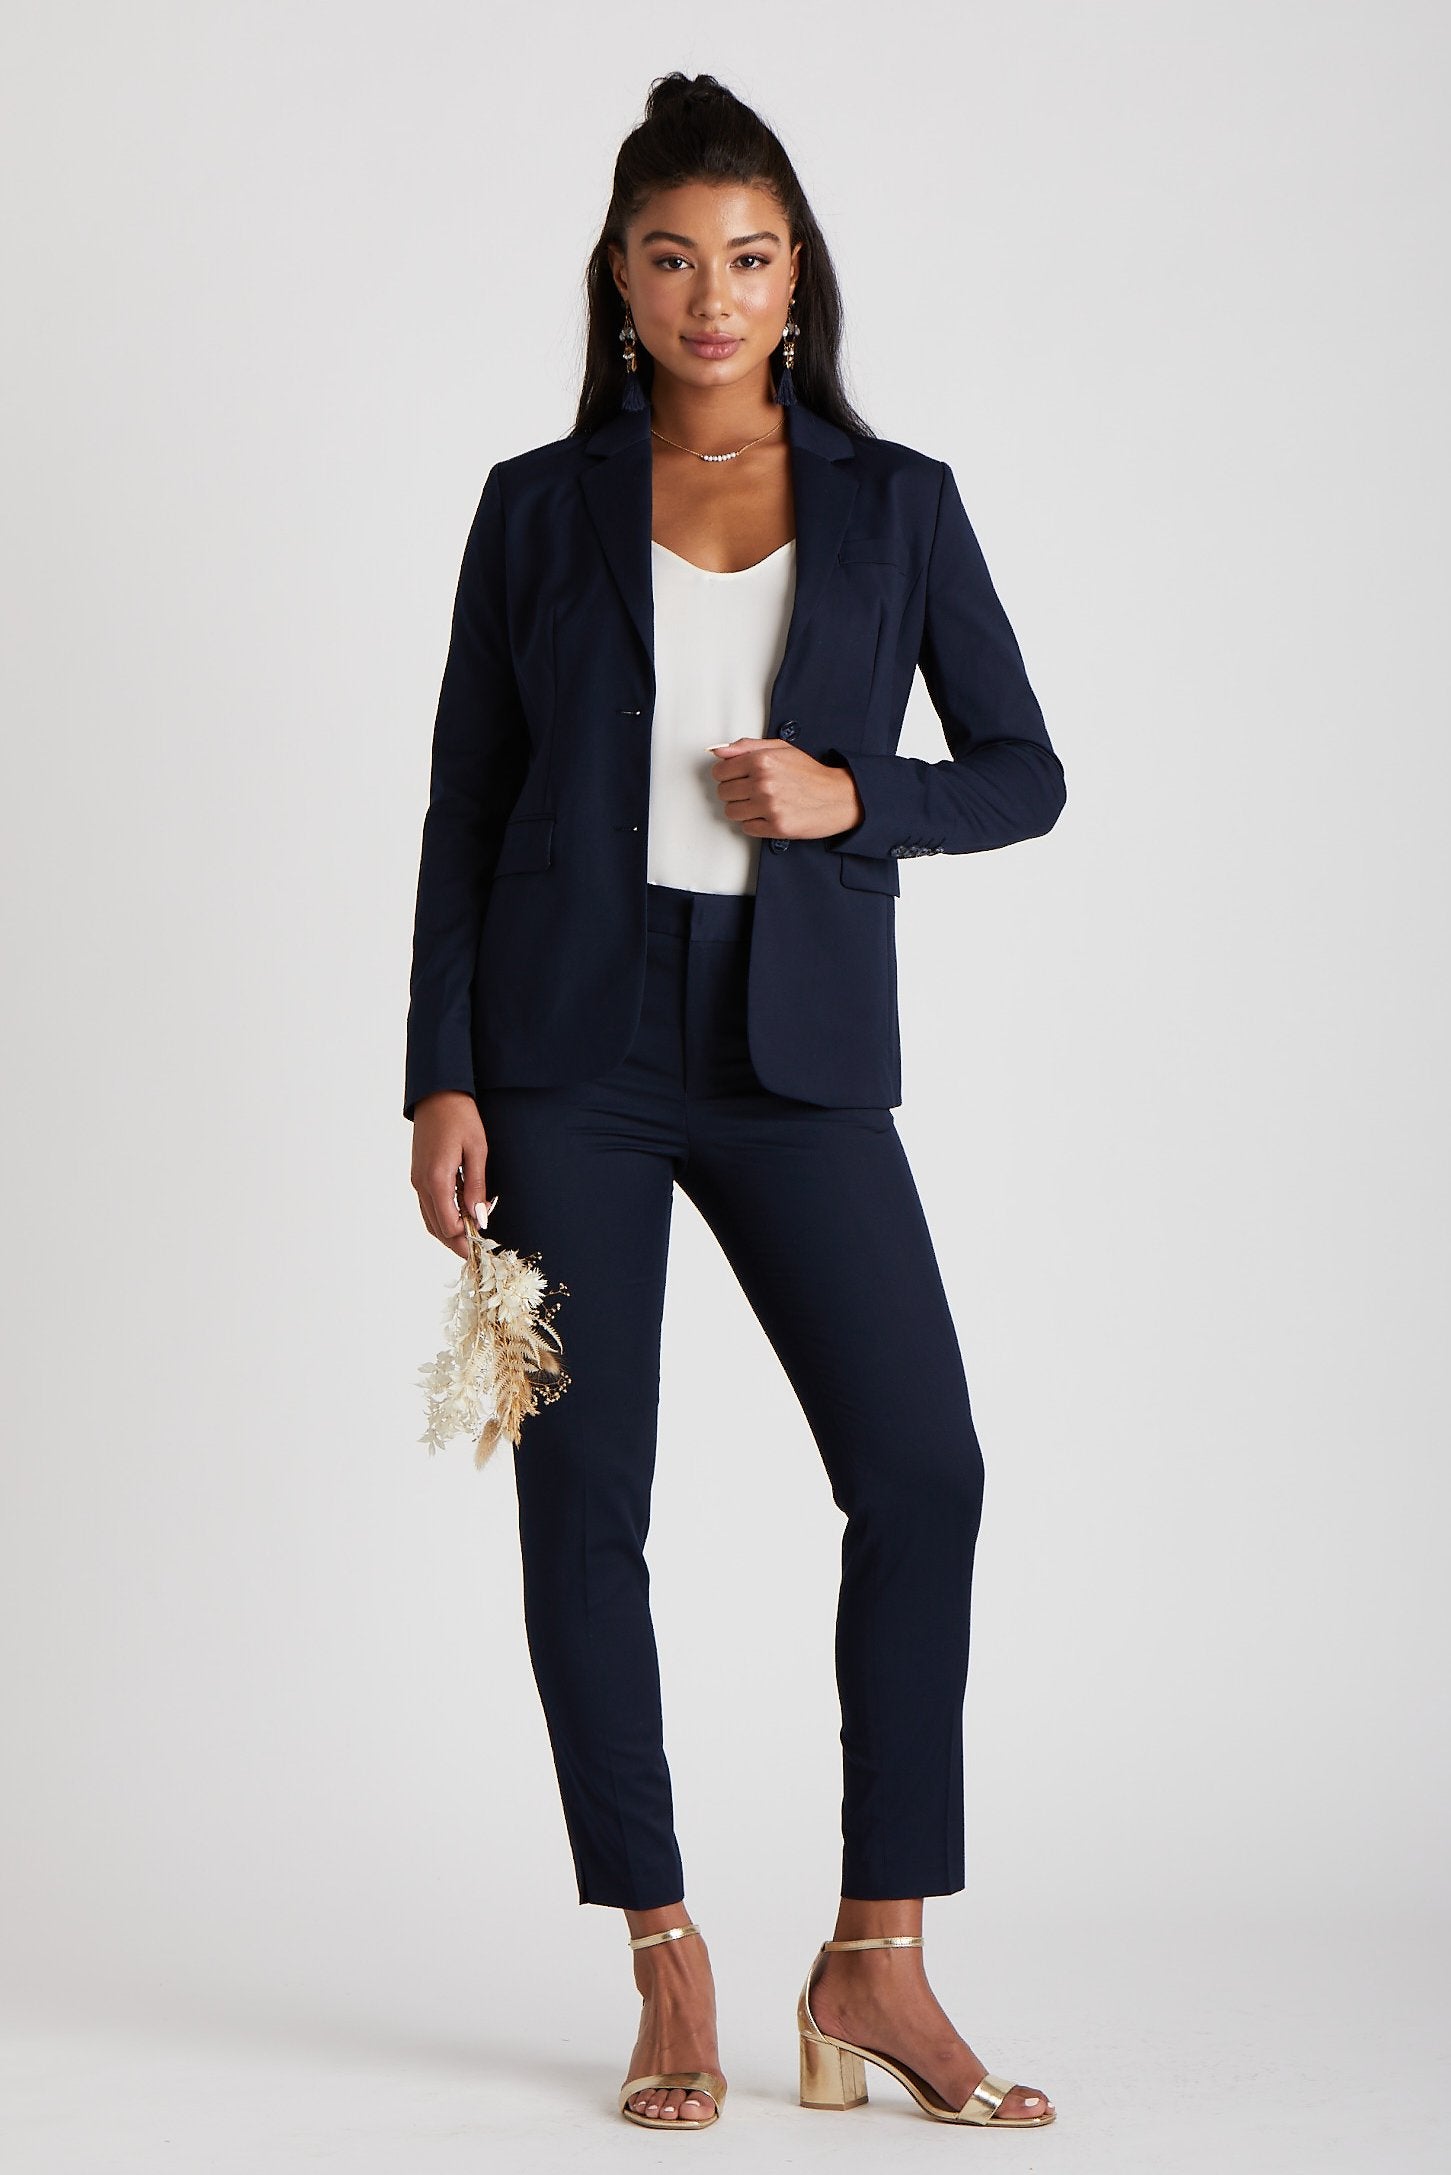 Women's Navy Blue Suit Pants by SuitShop